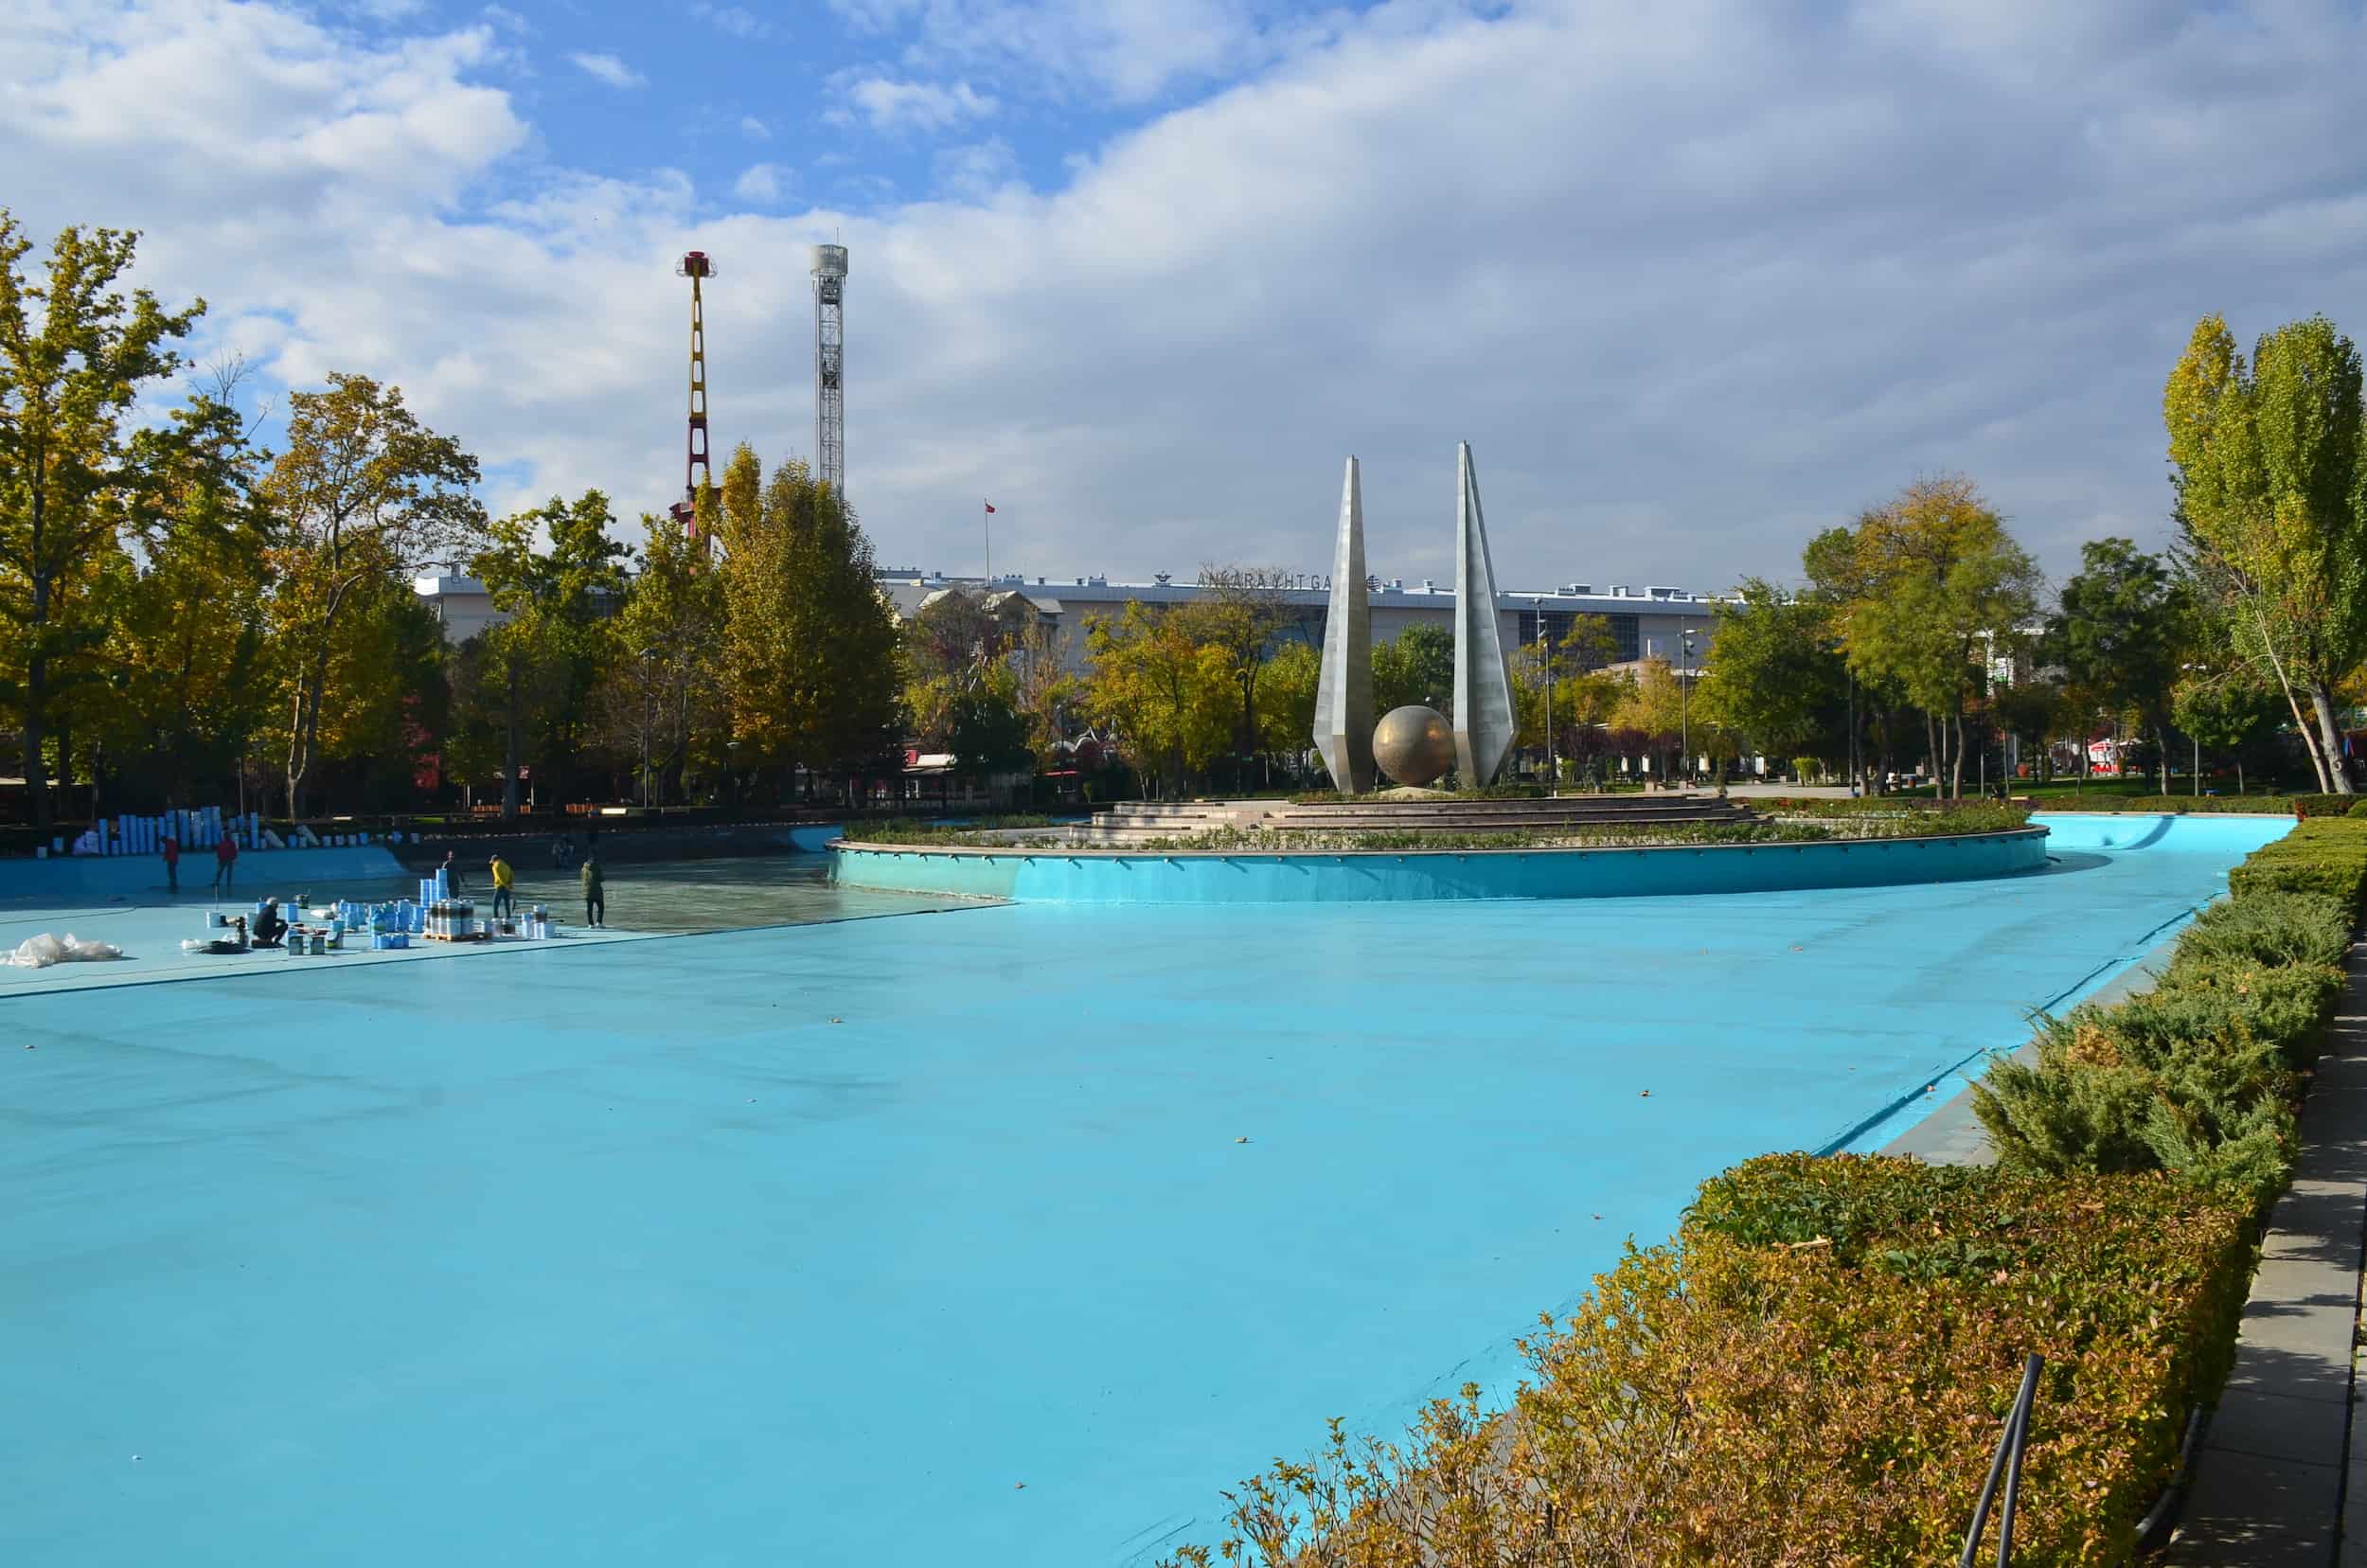 Pool at Gençlik Park in Ankara, Turkey